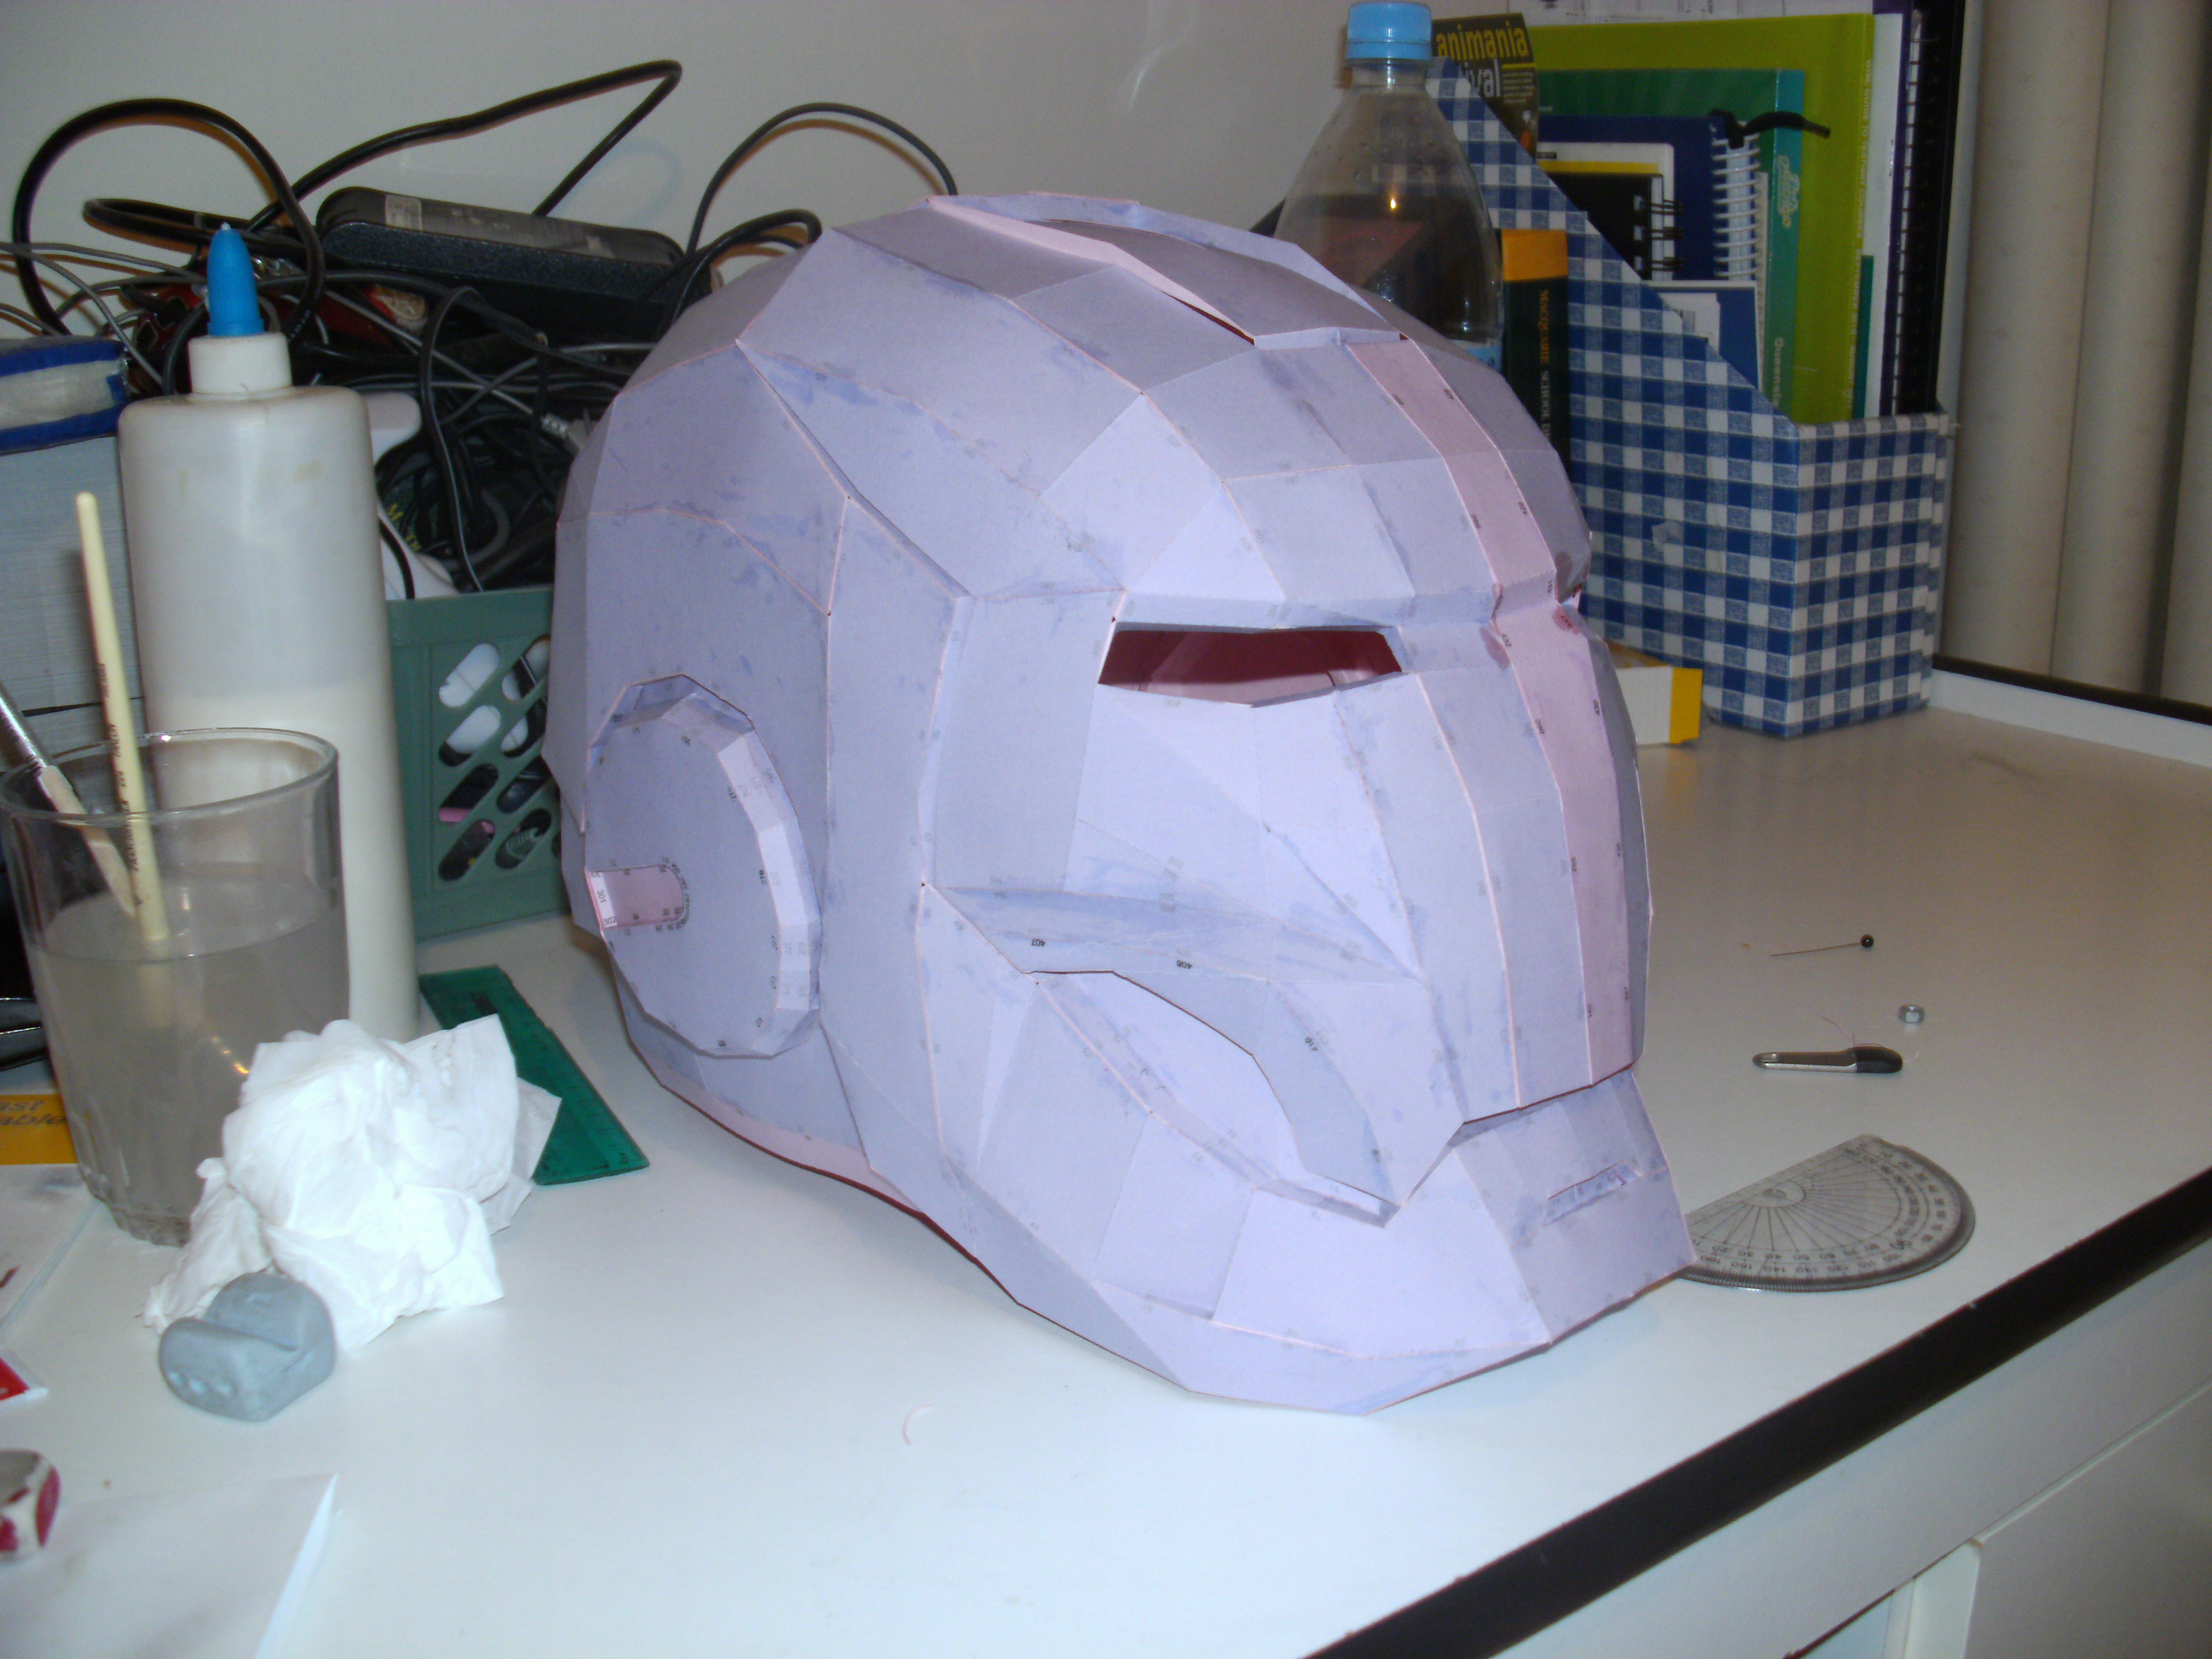 iron man helmet template pepakura